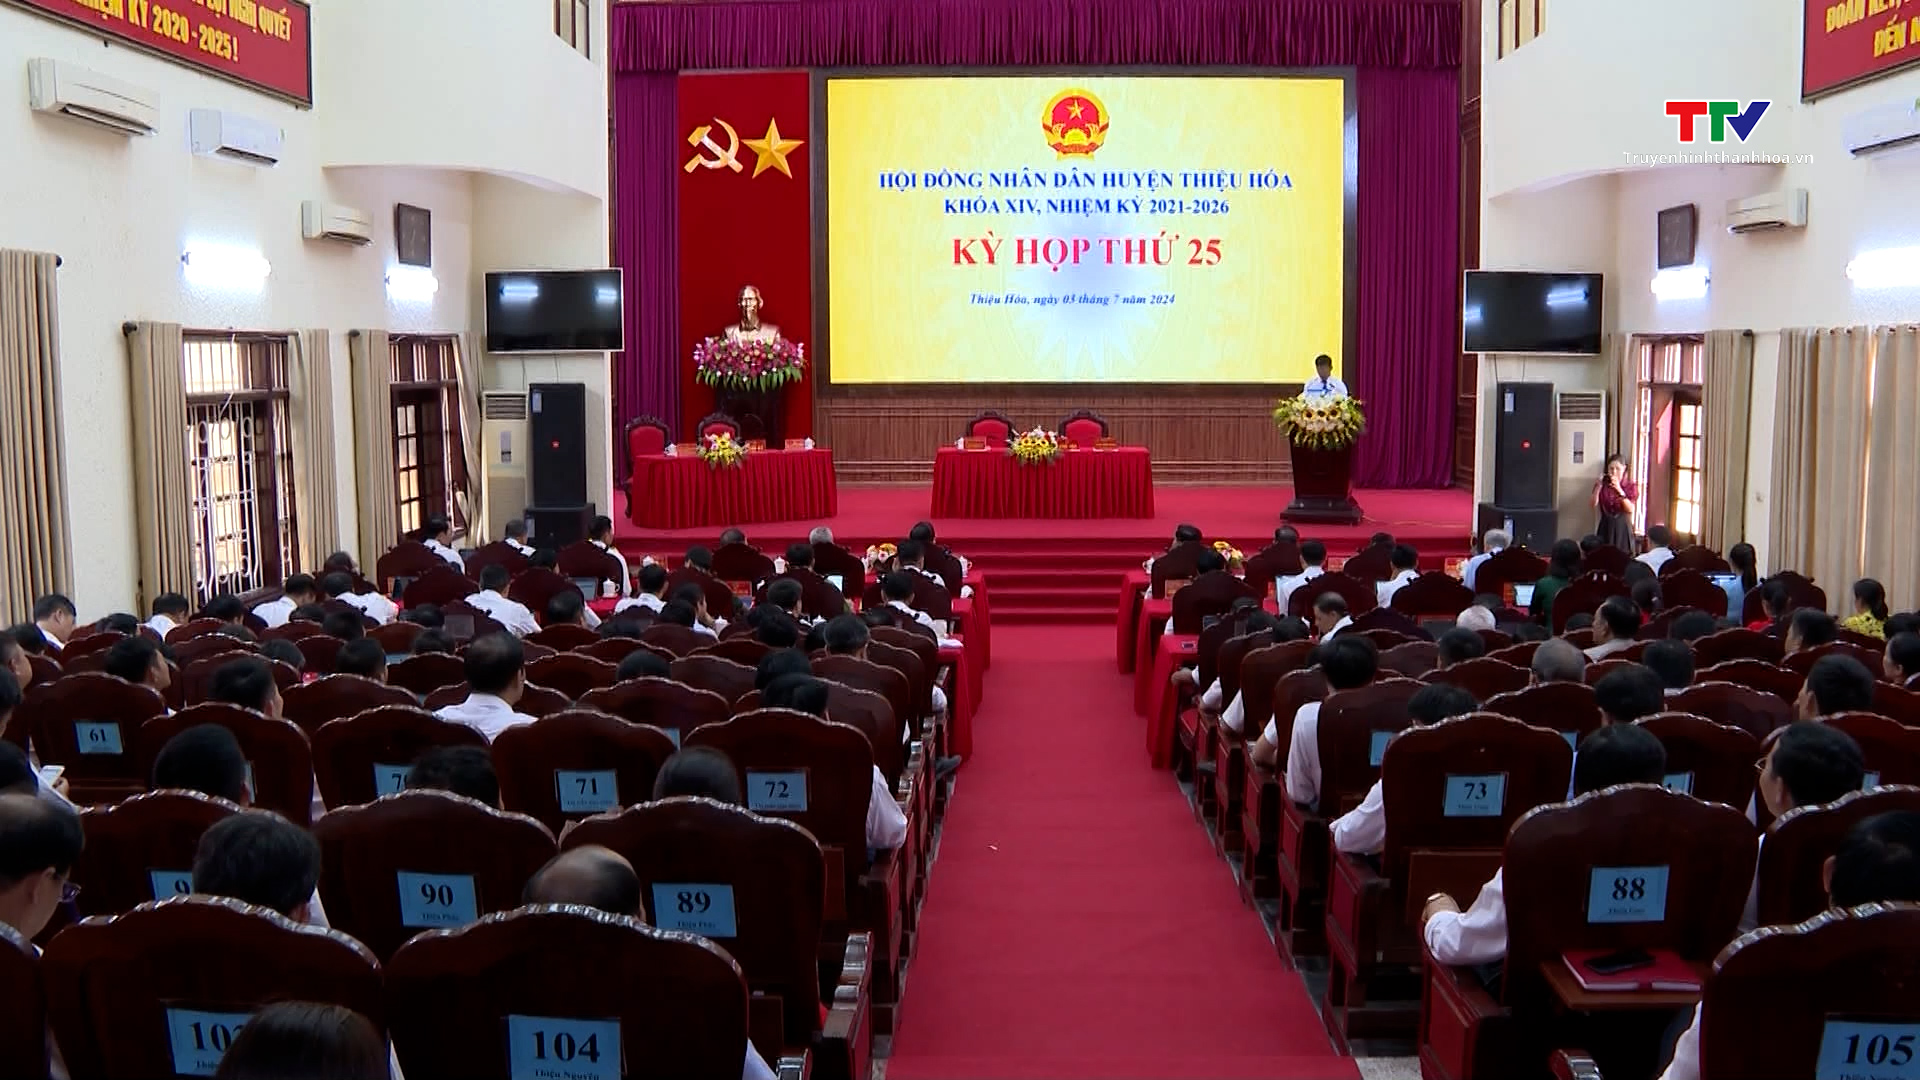 Kỳ họp thứ 25, Hội đồng Nhân dân huyện Thiệu Hoá khoá XIV, nhiệm kỳ 2021-2026- Ảnh 1.